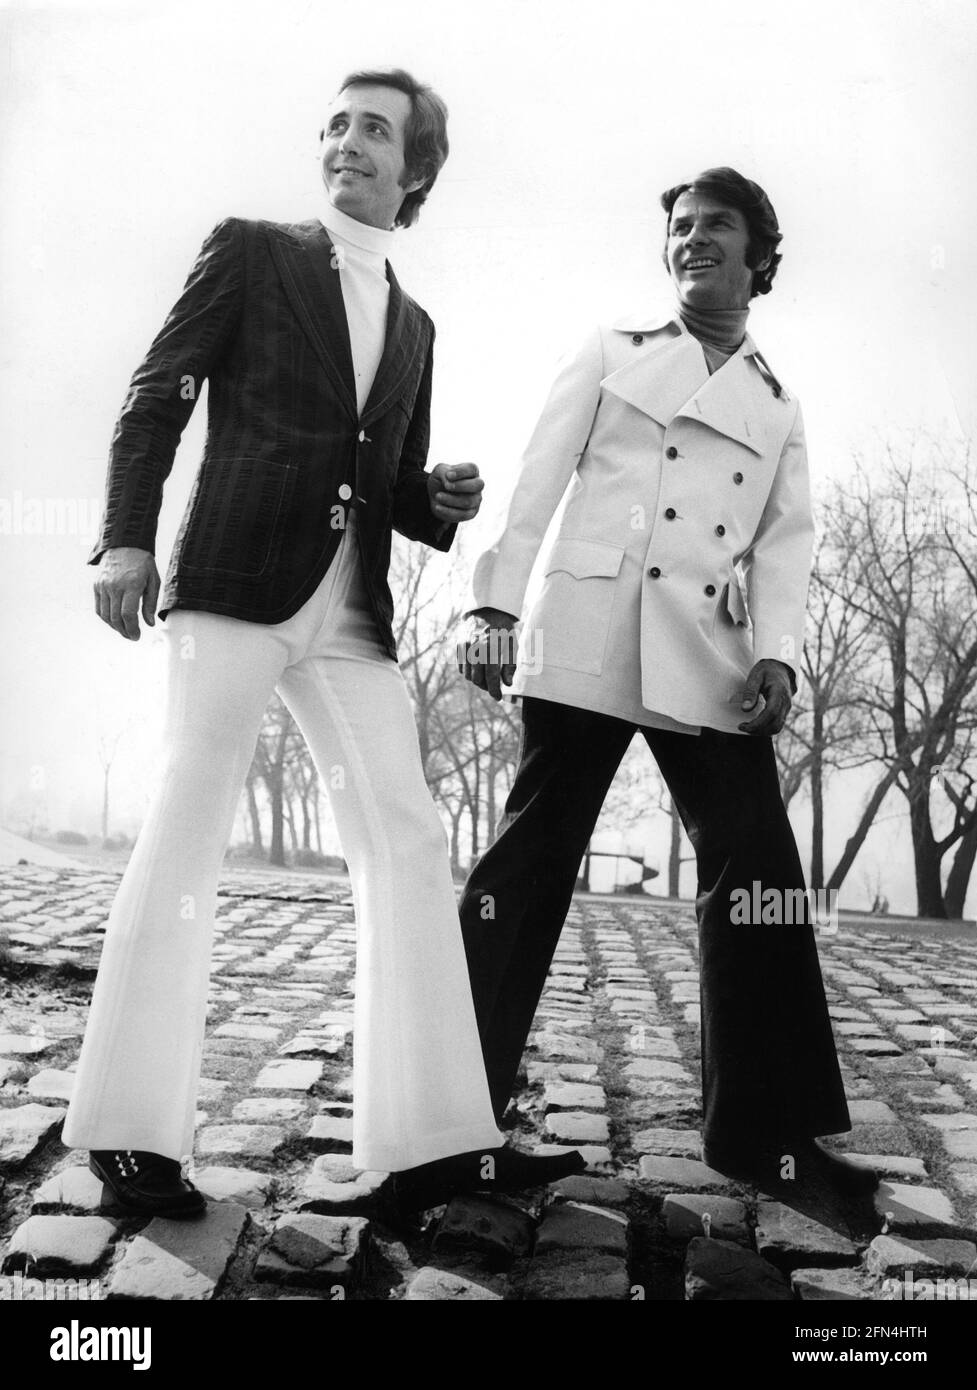 Mode, 70er Jahre, Herrenmode, zwei Männer in Fackeln und Jacken, ZUSÄTZLICHE RECHTE-CLEARANCE-INFO-NOT-AVAILABLE Stockfoto